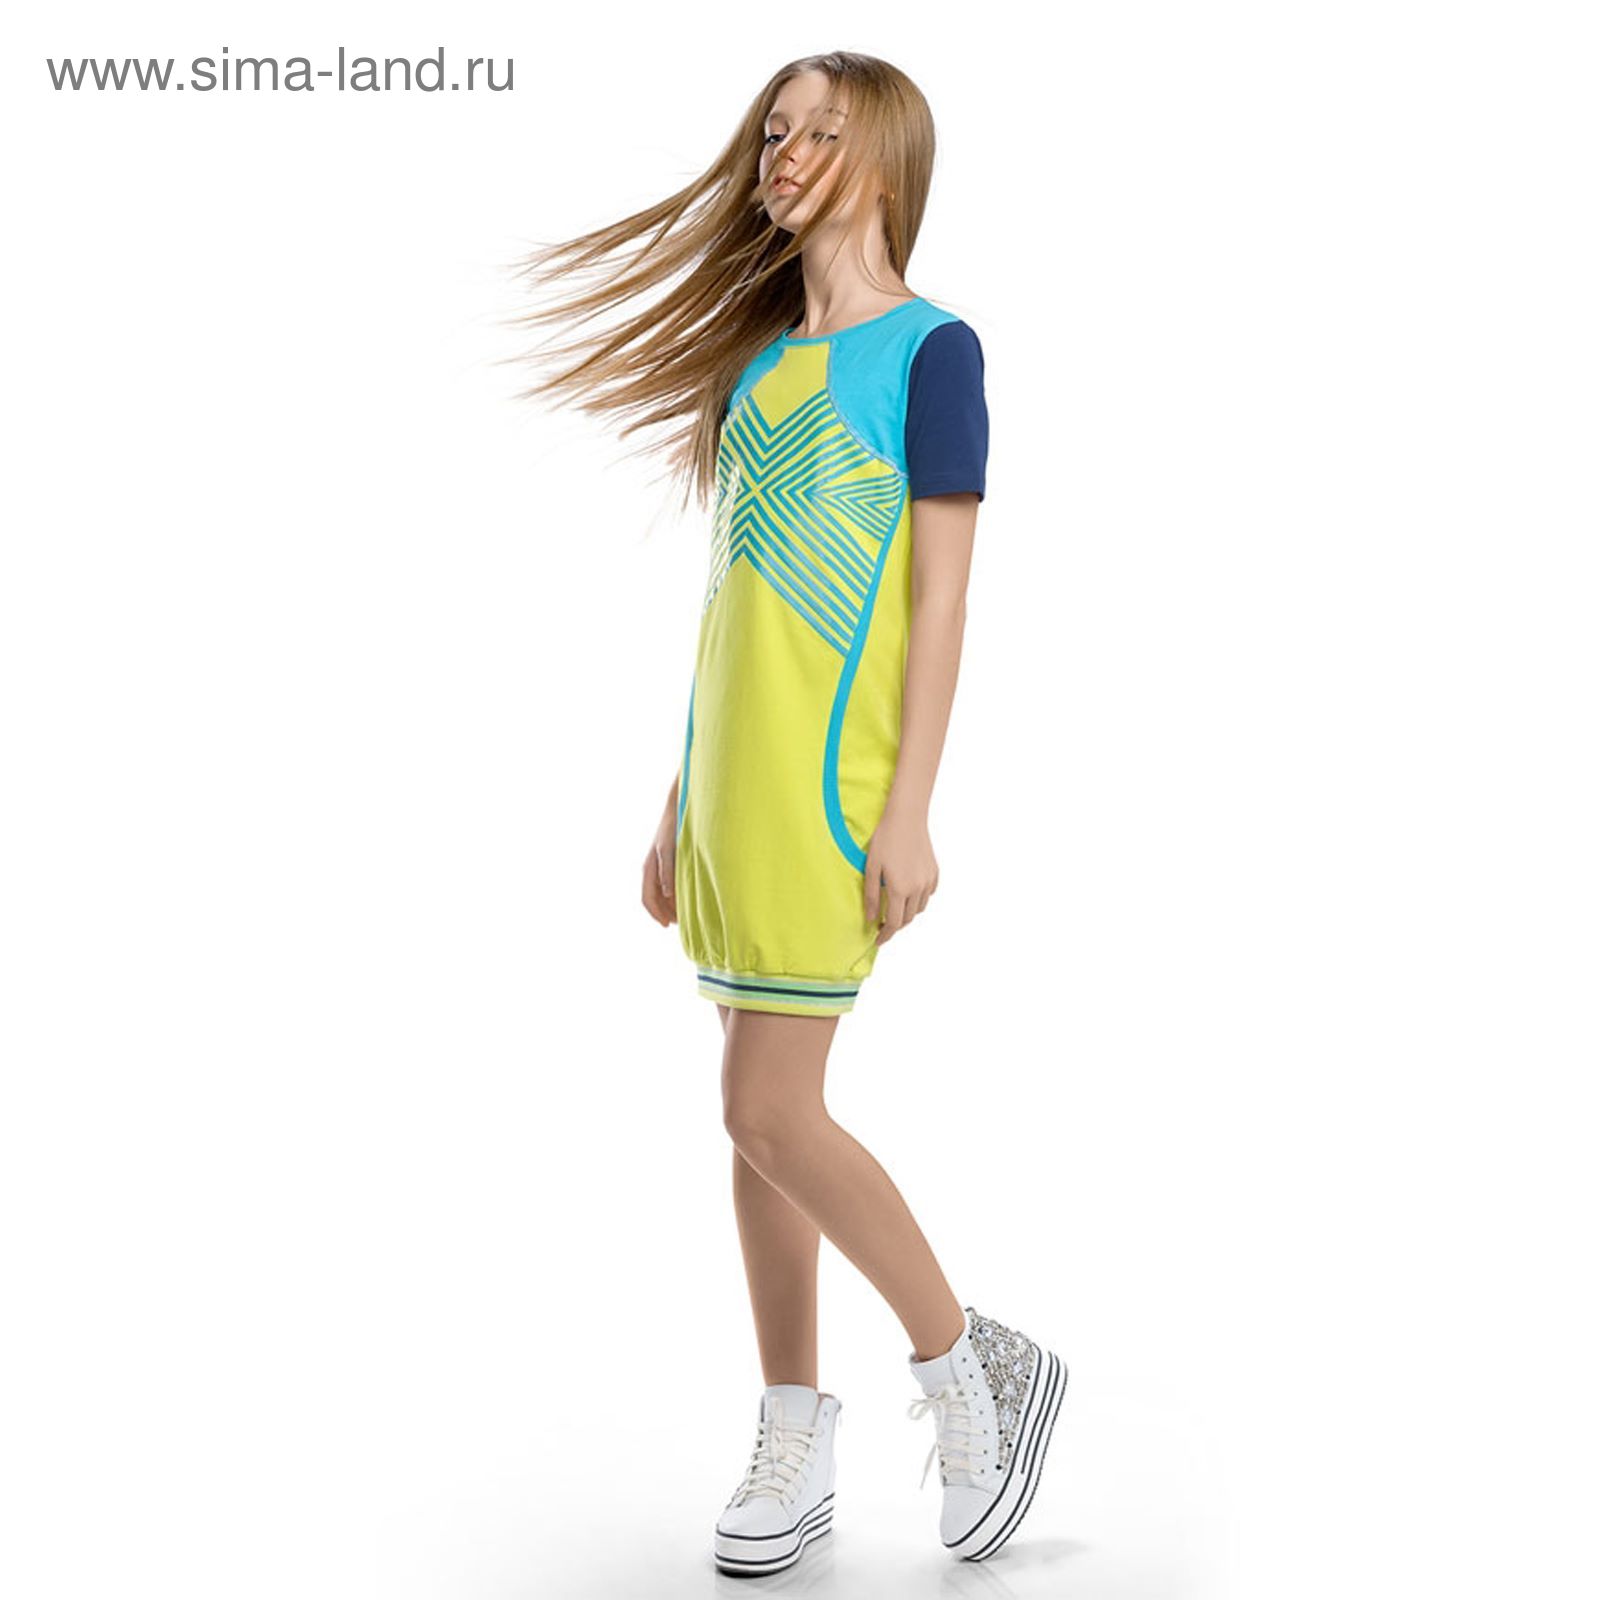 Платье для девочек, рост 152-158 см, возраст 12 лет, цвет лайм (1402637) -  Купить по цене от 1 233.30 руб. | Интернет магазин SIMA-LAND.RU